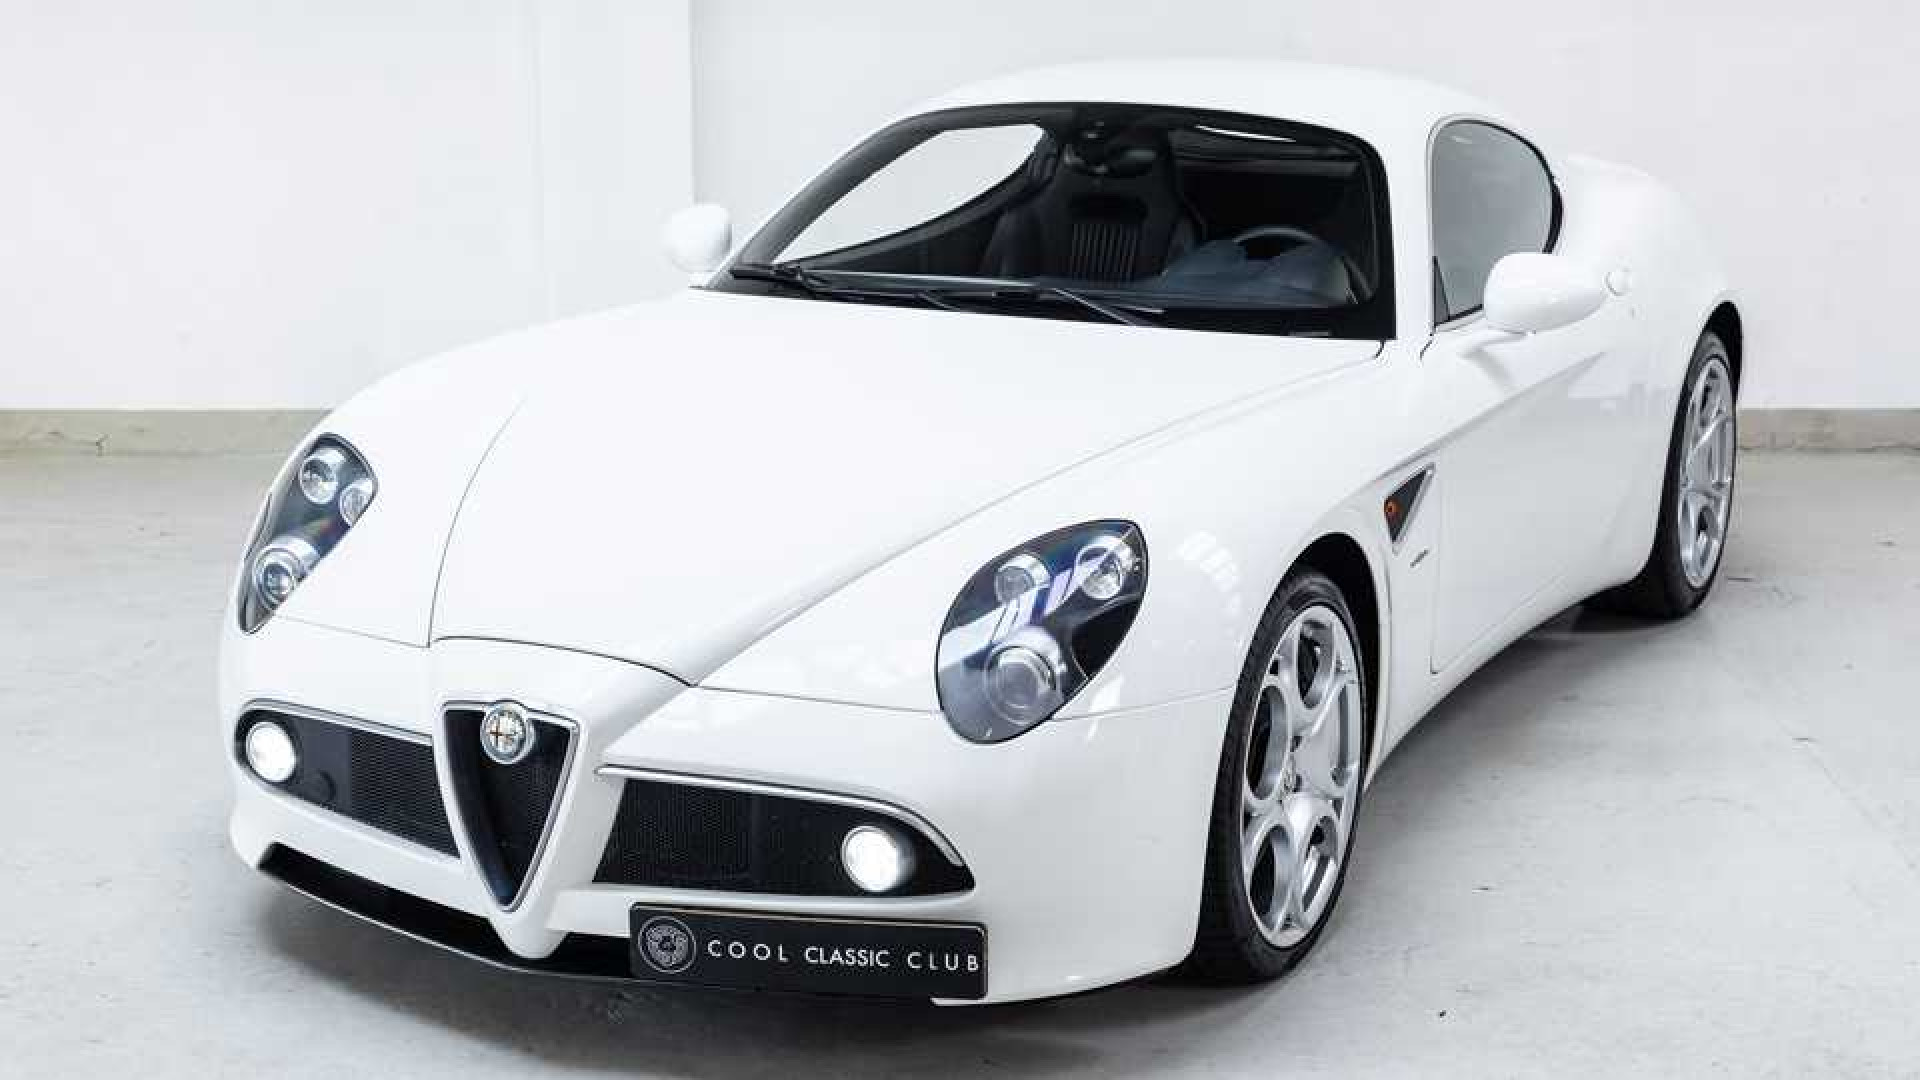 Bieden op de zeldzame Alfa Romeo van wijlen Jan des Bouvrie. Zie foto's plus alle info.